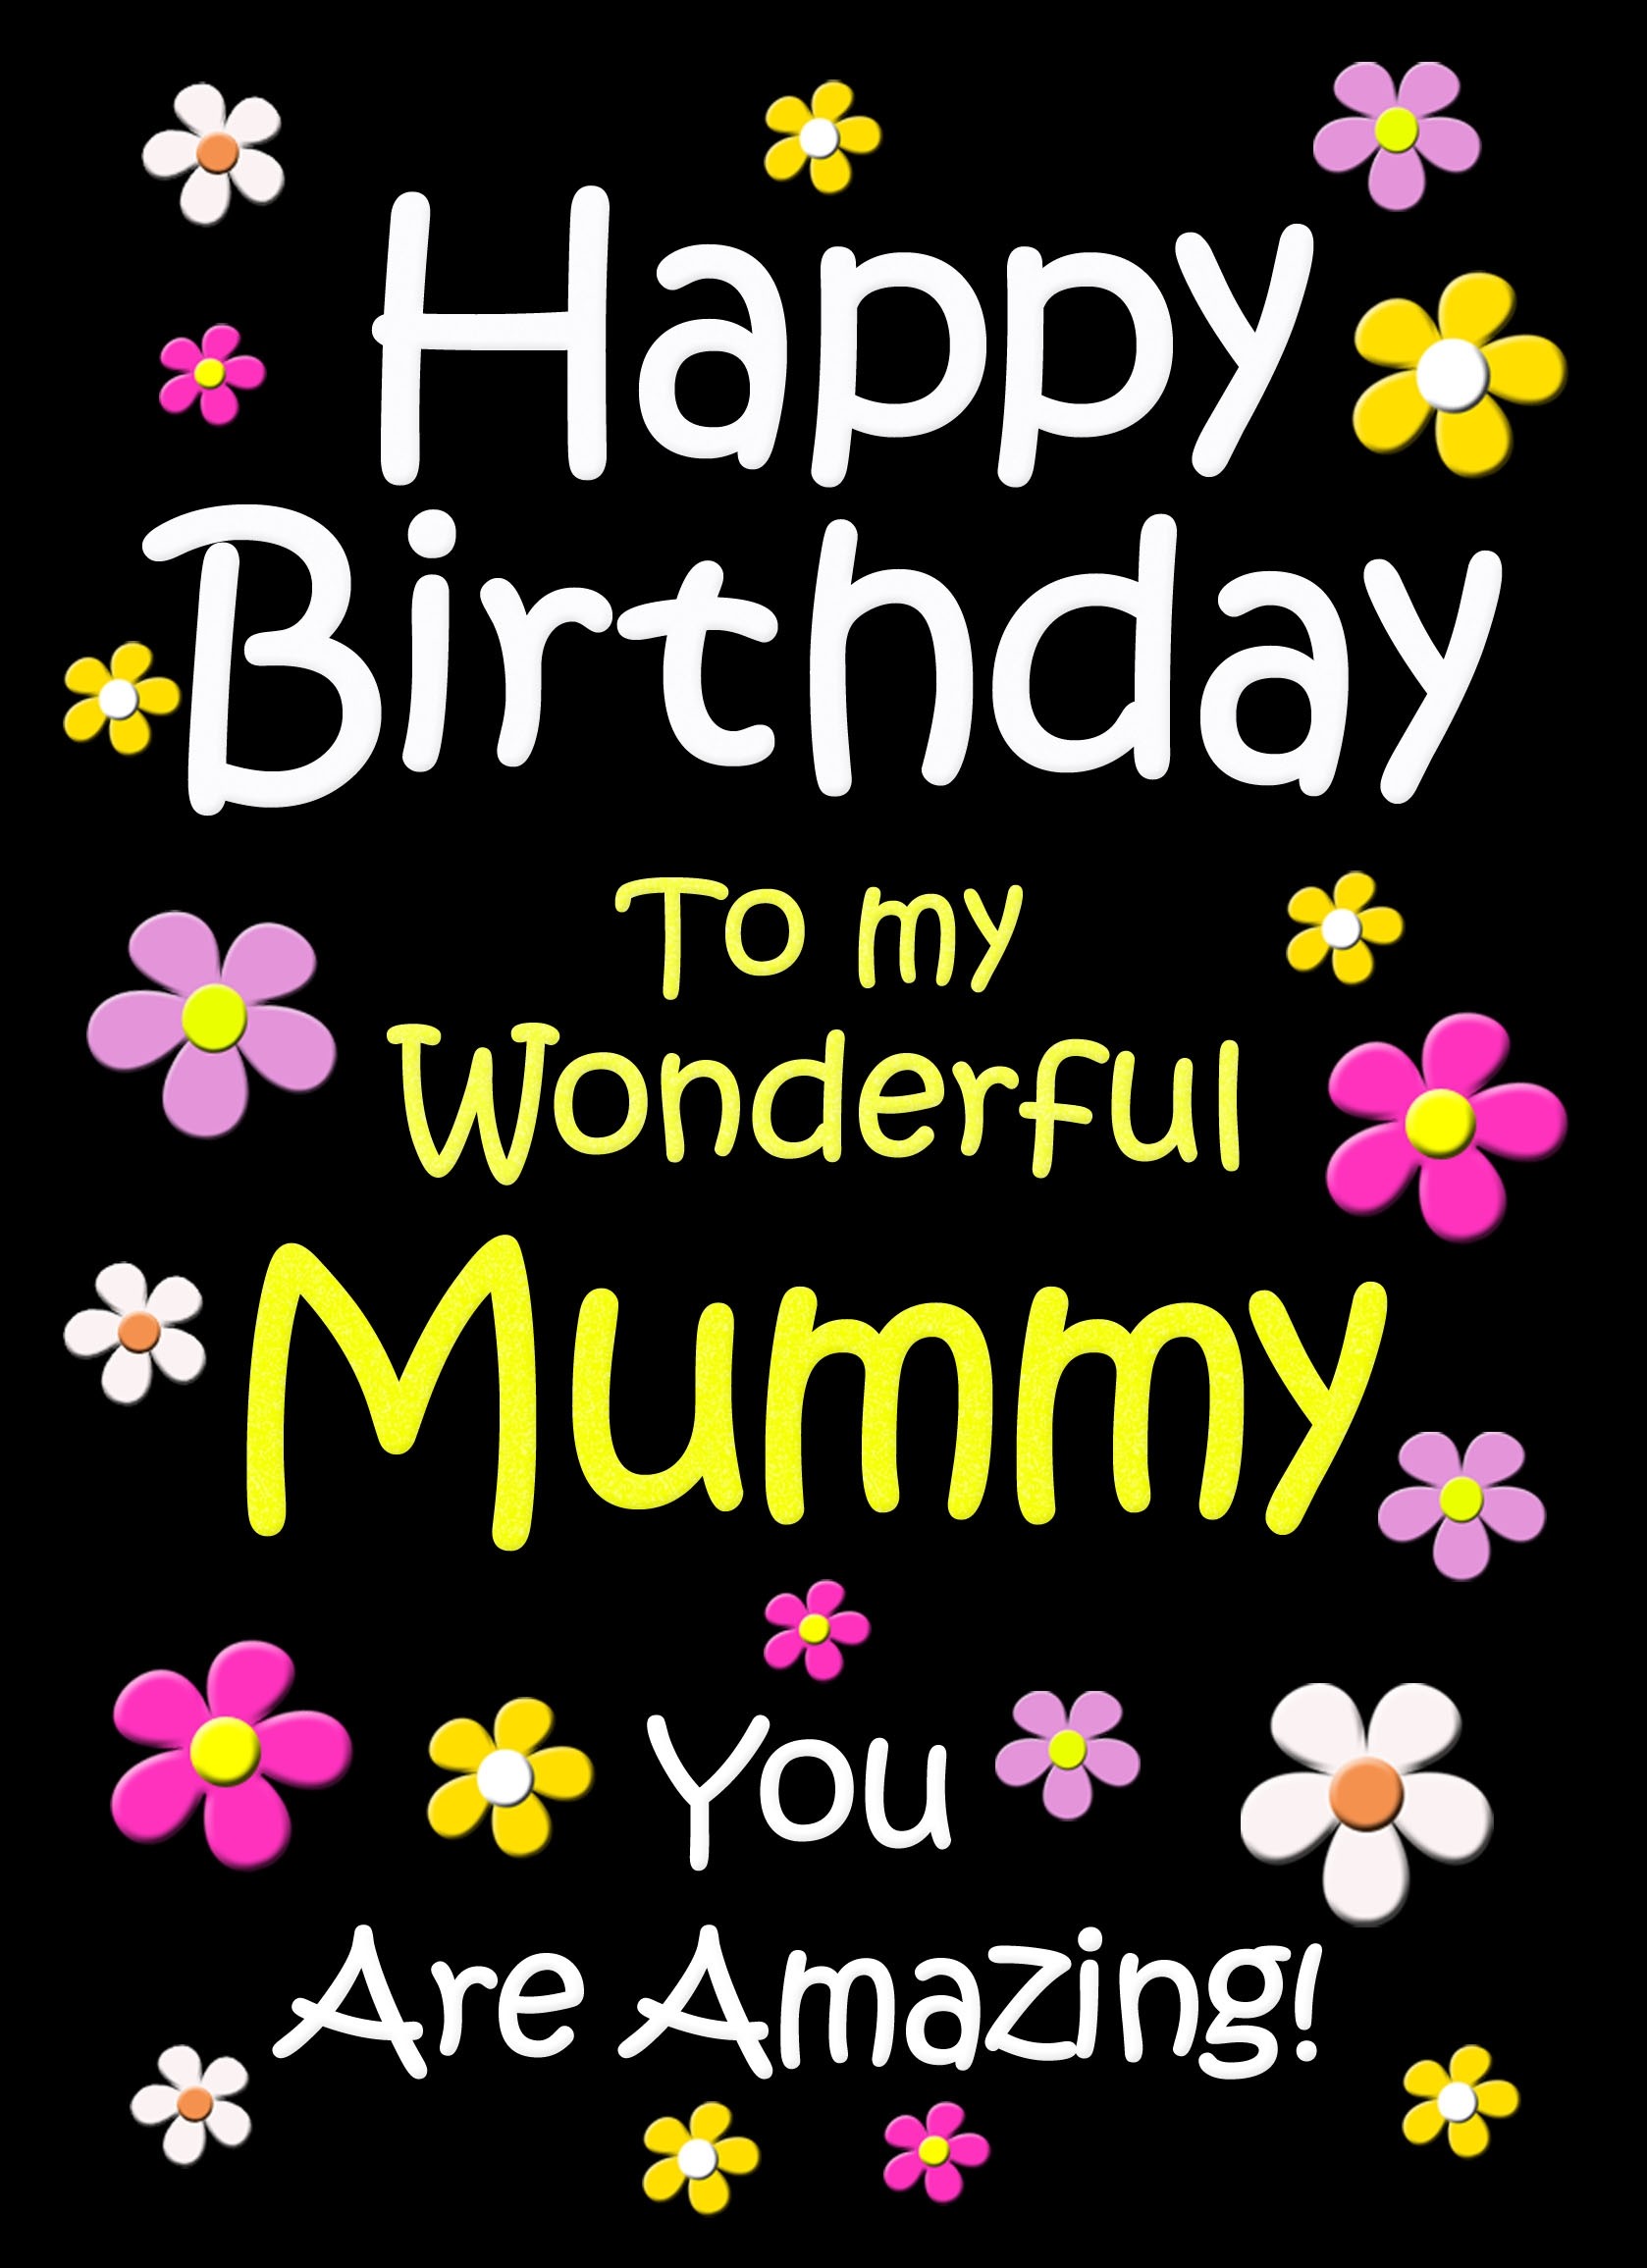 Mummy Birthday Card (Black)